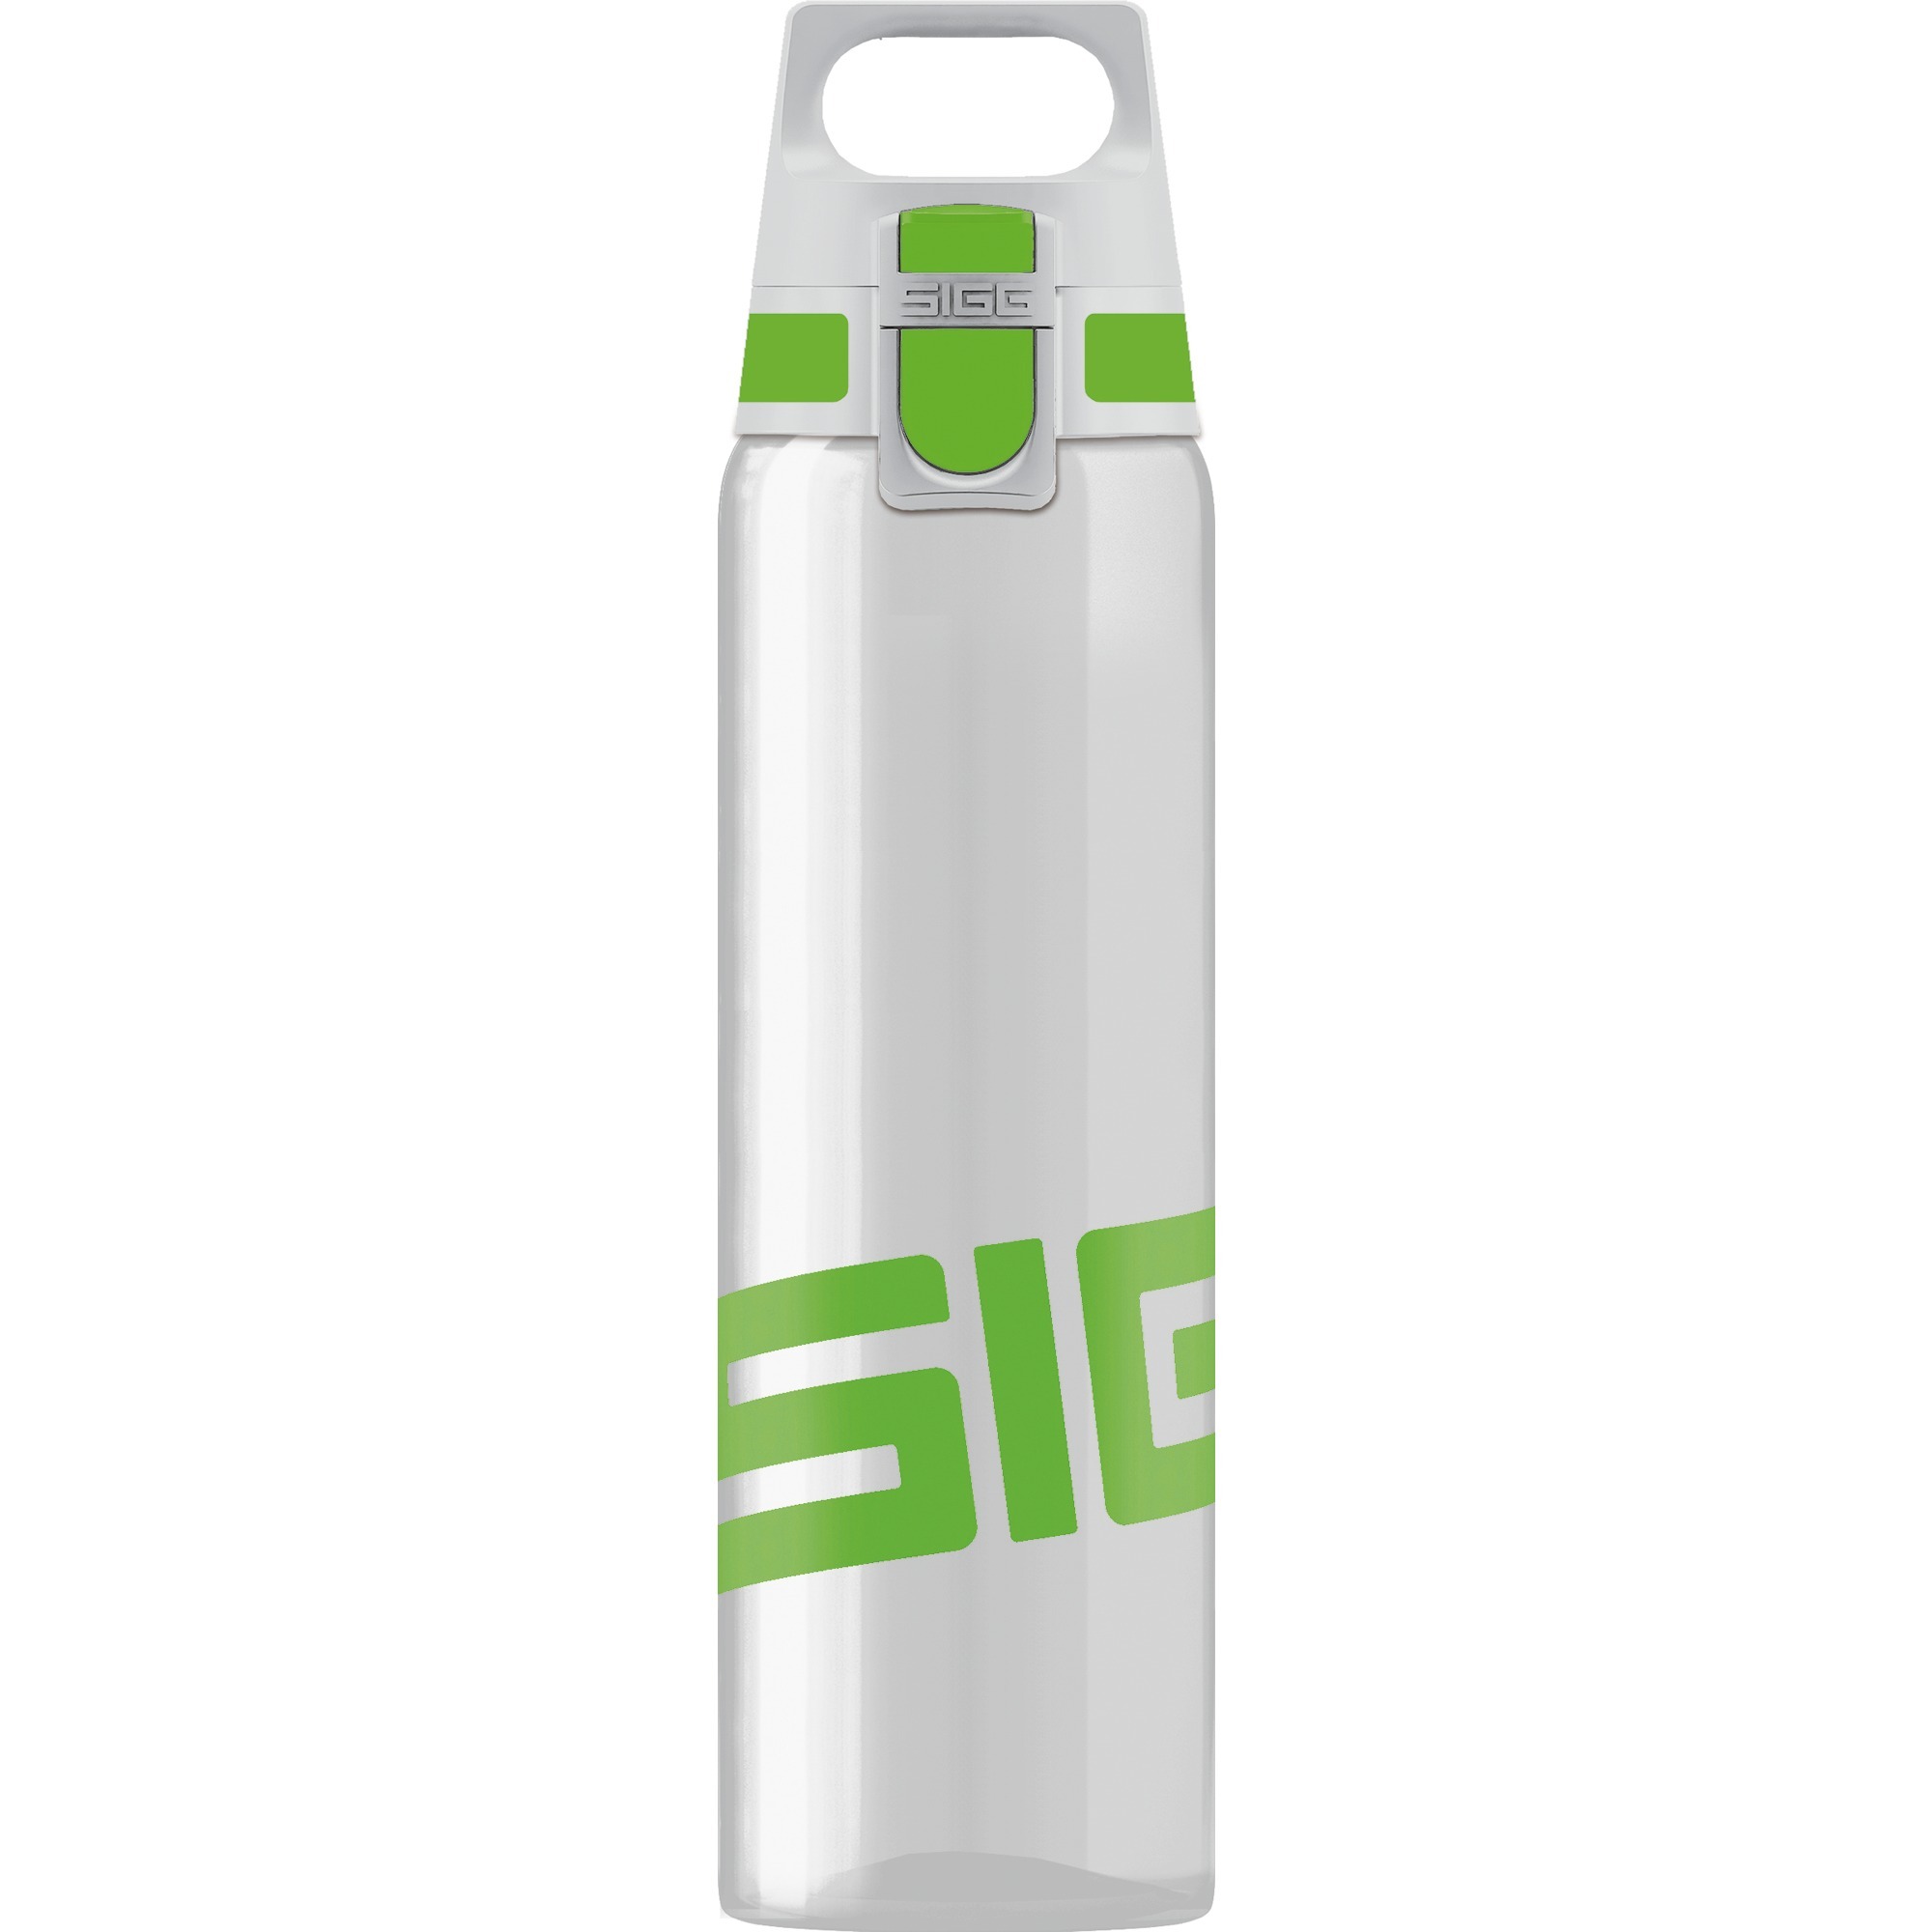 Image of Alternate - Total Clear One Green 0,75 Liter, Trinkflasche online einkaufen bei Alternate